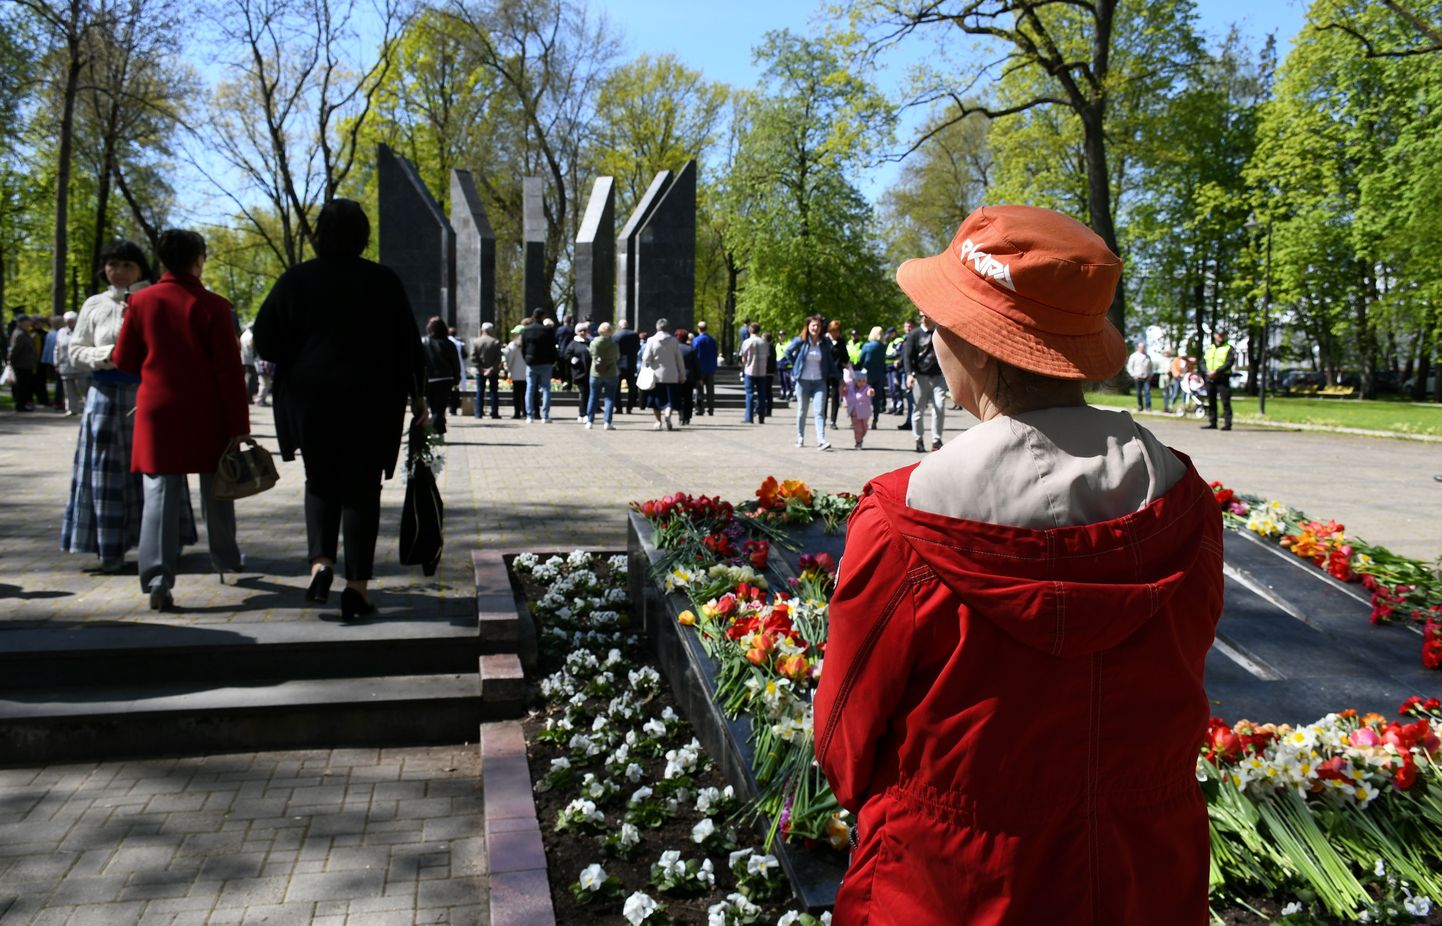 Pretēji aizliegumam 9. maijā rīkot publiskus svētku pasākumus un gājienus, cilvēki ieradušies nolikt ziedus pie mūžīgās uguns Dubrovina parkā Daugavpilī.